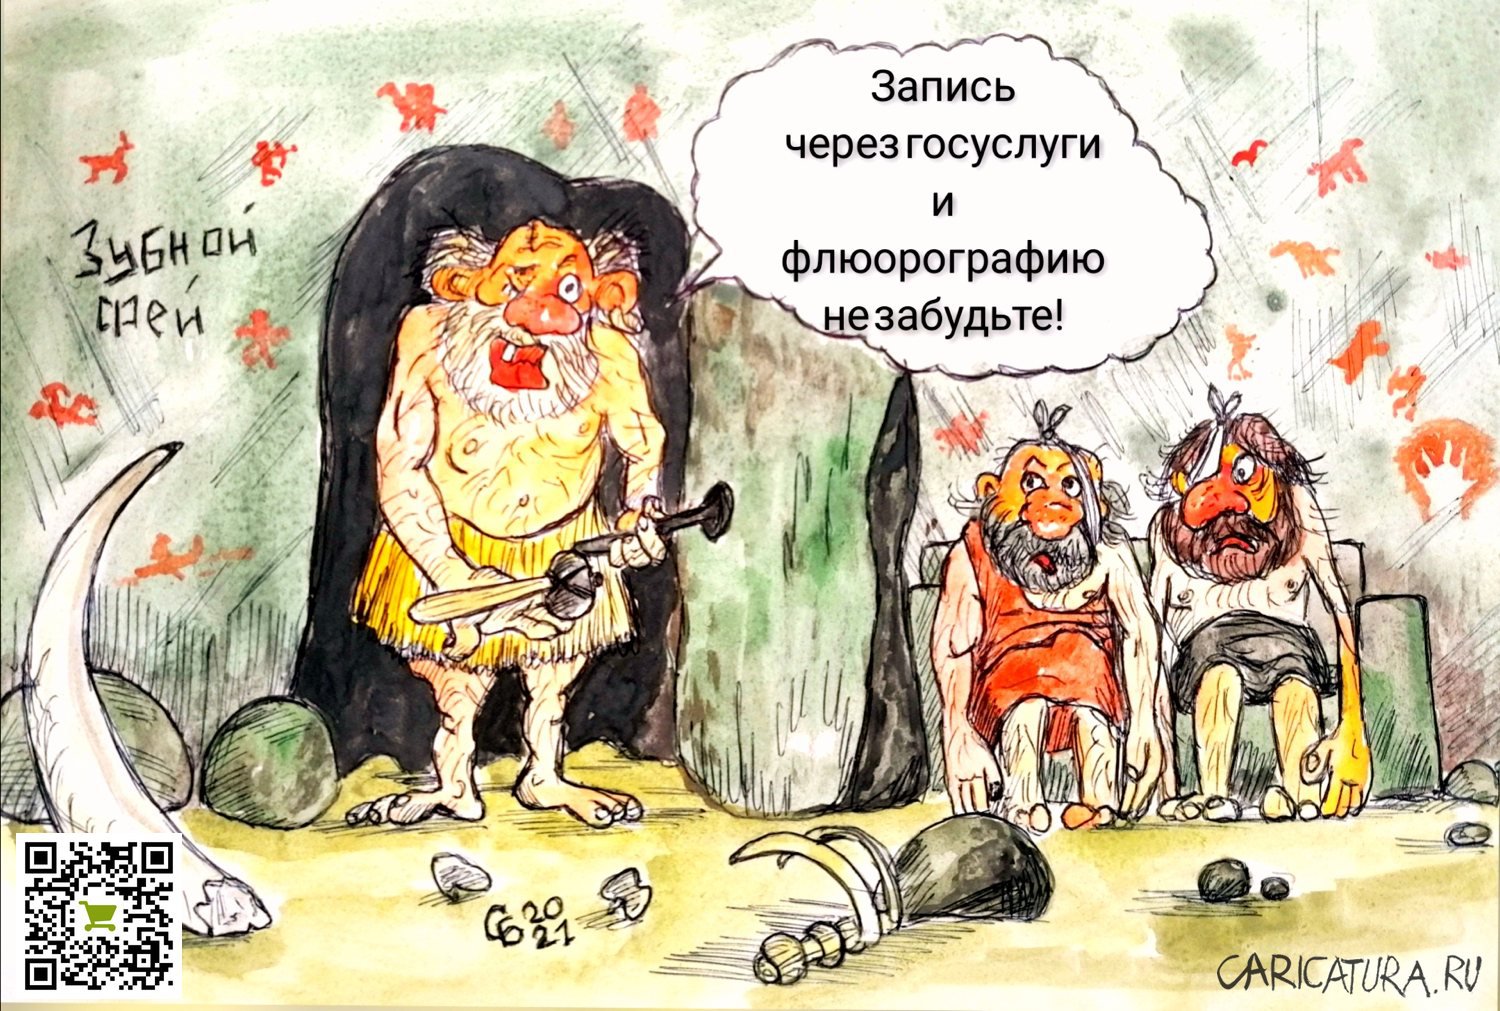 Карикатура "Долгая реформа", Сергей Боровиков